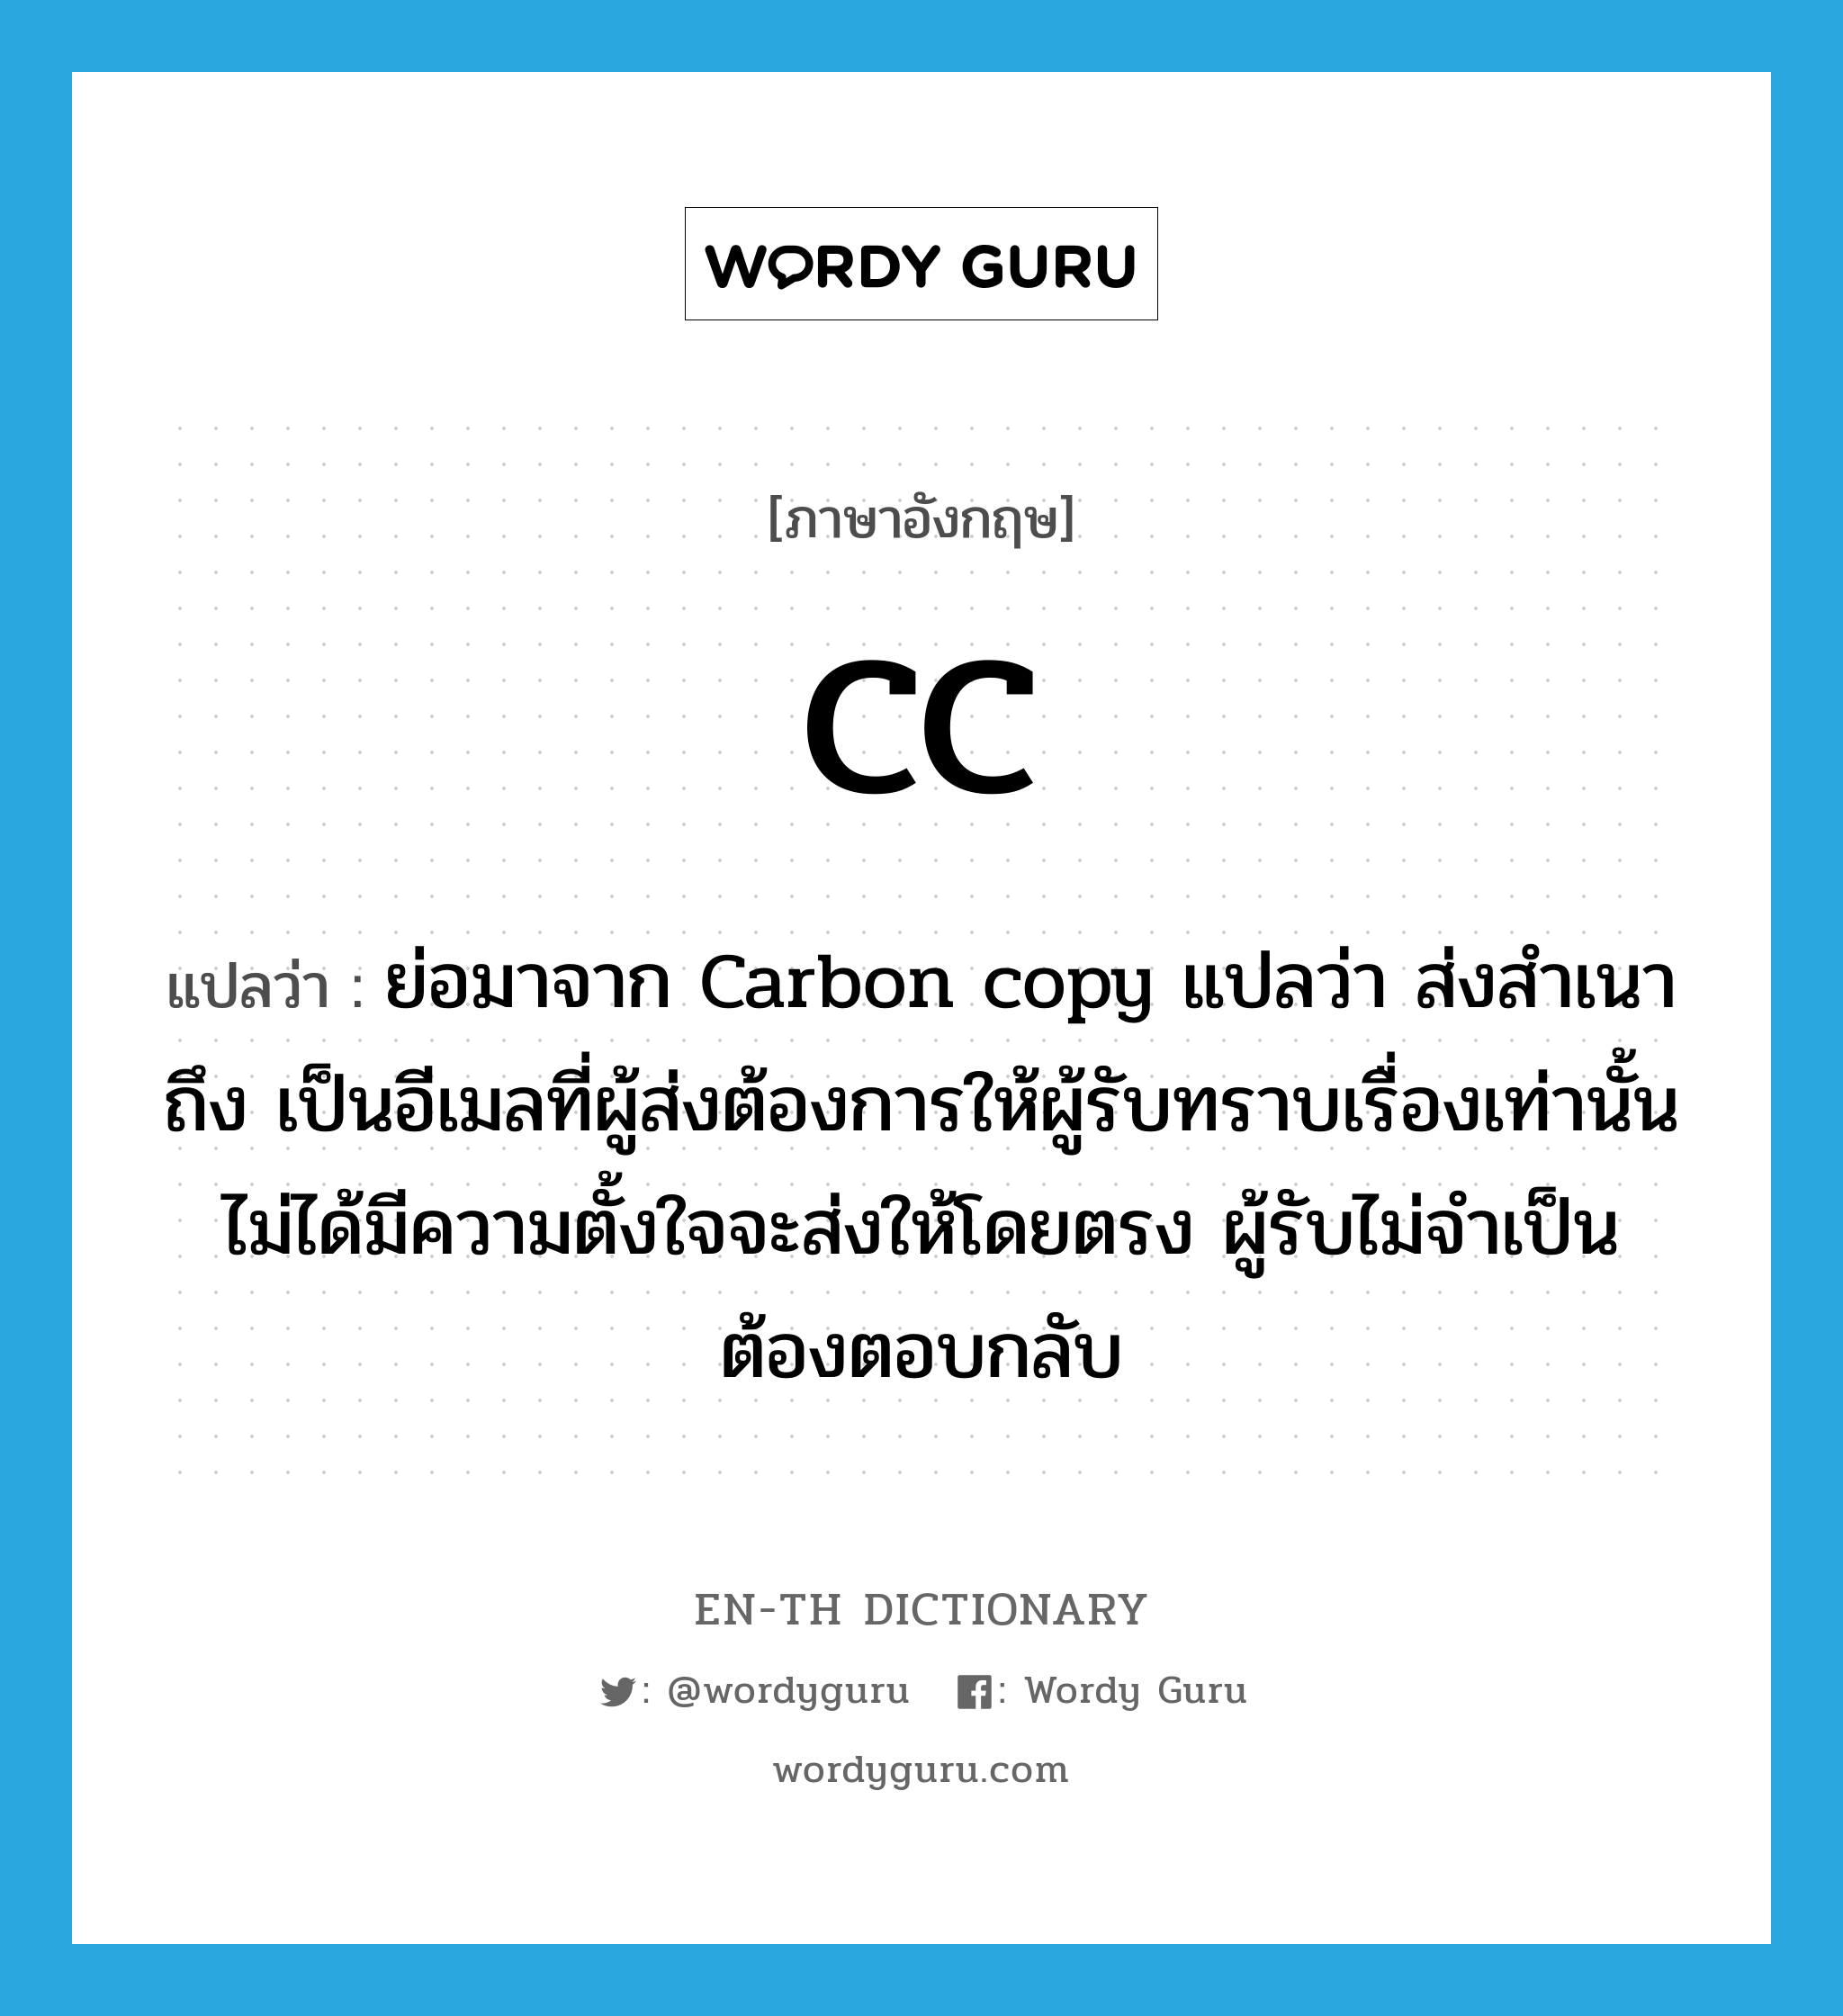 ย่อมาจาก Carbon copy แปลว่า ส่งสำเนาถึง เป็นอีเมลที่ผู้ส่งต้องการให้ผู้รับทราบเรื่องเท่านั้น ไม่ได้มีความตั้งใจจะส่งให้โดยตรง ผู้รับไม่จำเป็นต้องตอบกลับ ภาษาอังกฤษ?, คำศัพท์ภาษาอังกฤษ ย่อมาจาก Carbon copy แปลว่า ส่งสำเนาถึง เป็นอีเมลที่ผู้ส่งต้องการให้ผู้รับทราบเรื่องเท่านั้น ไม่ได้มีความตั้งใจจะส่งให้โดยตรง ผู้รับไม่จำเป็นต้องตอบกลับ แปลว่า CC ประเภท abbr หมวด abbr